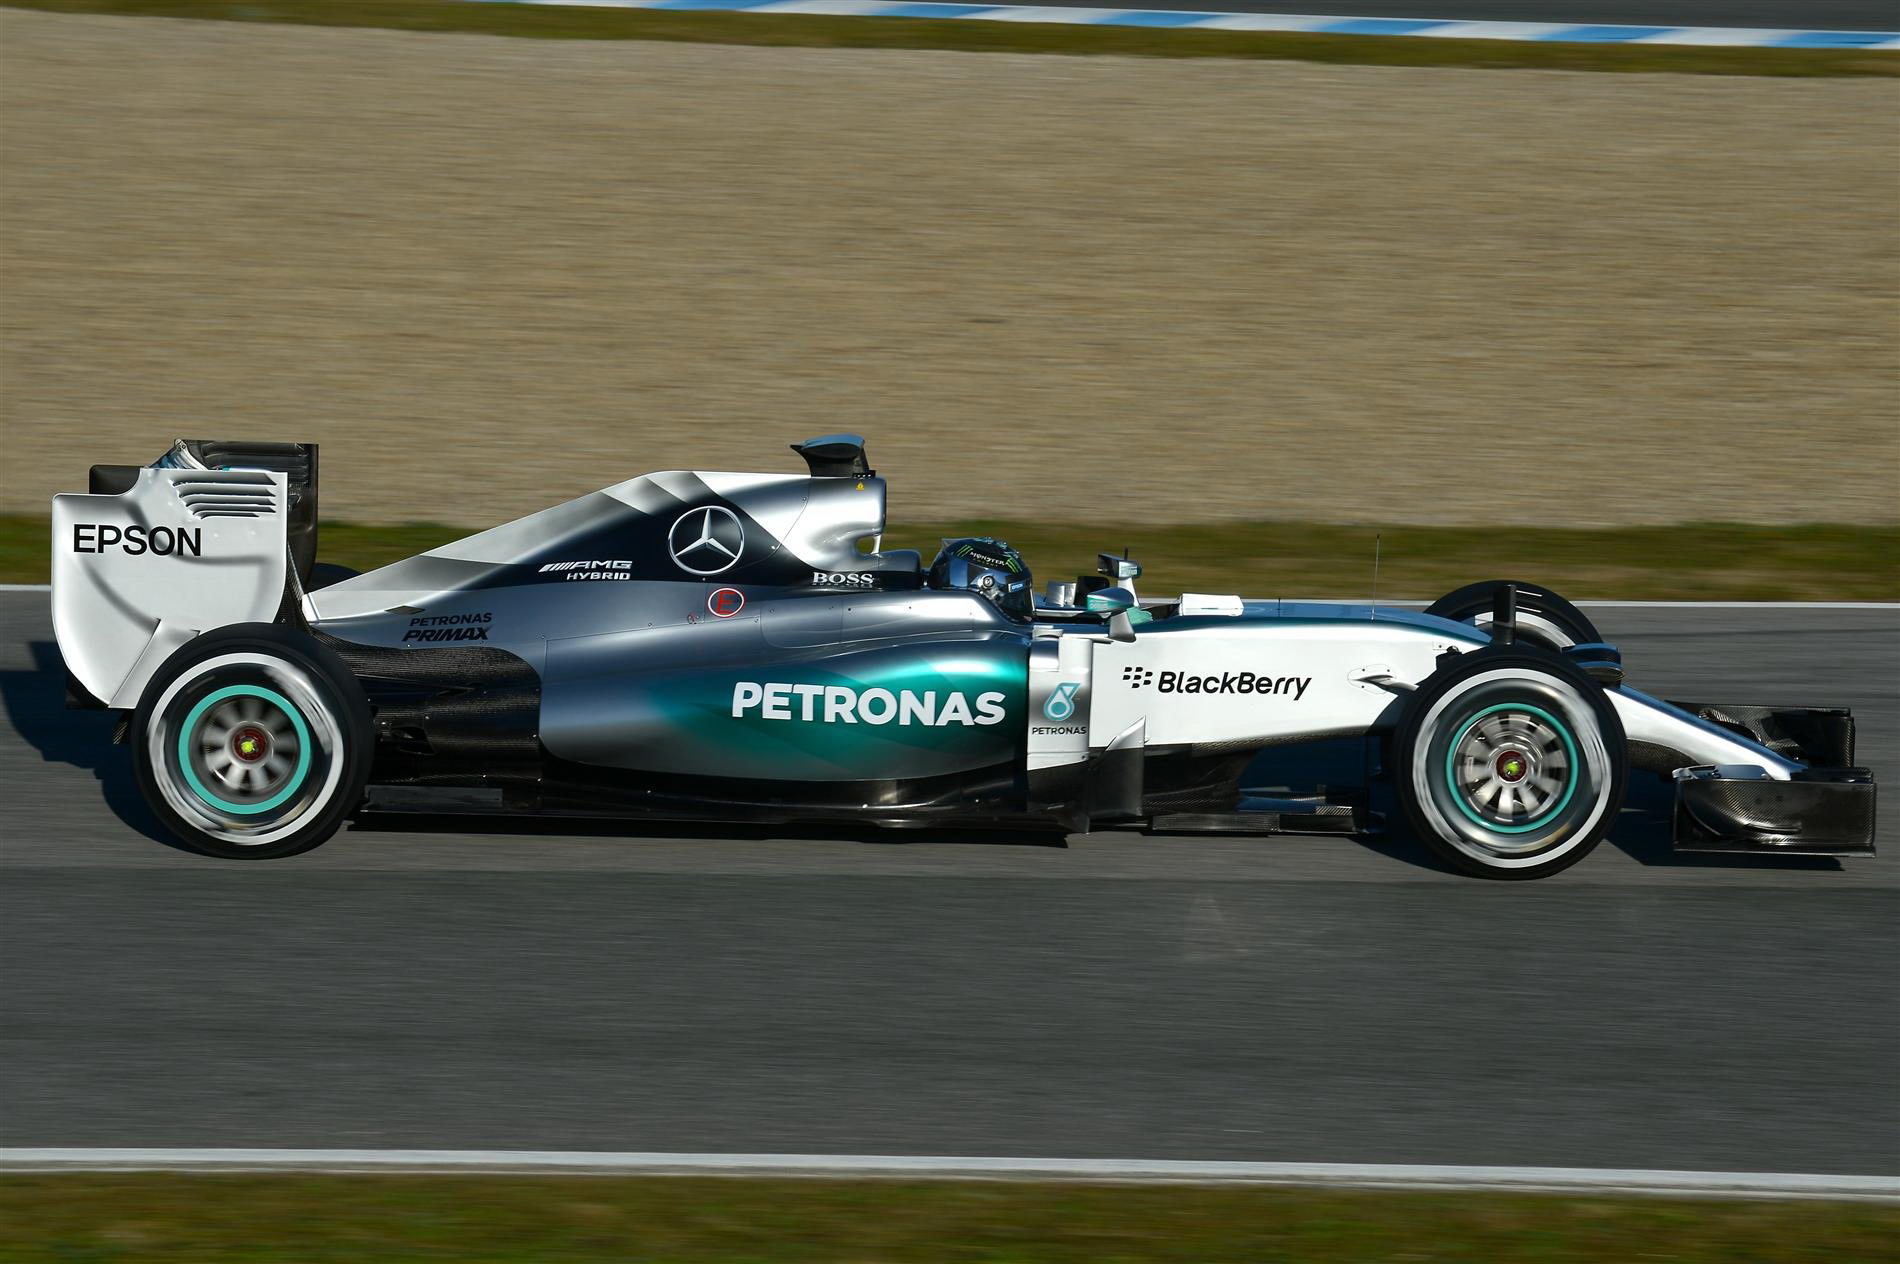 Mercedes F1 W06 Hybrid